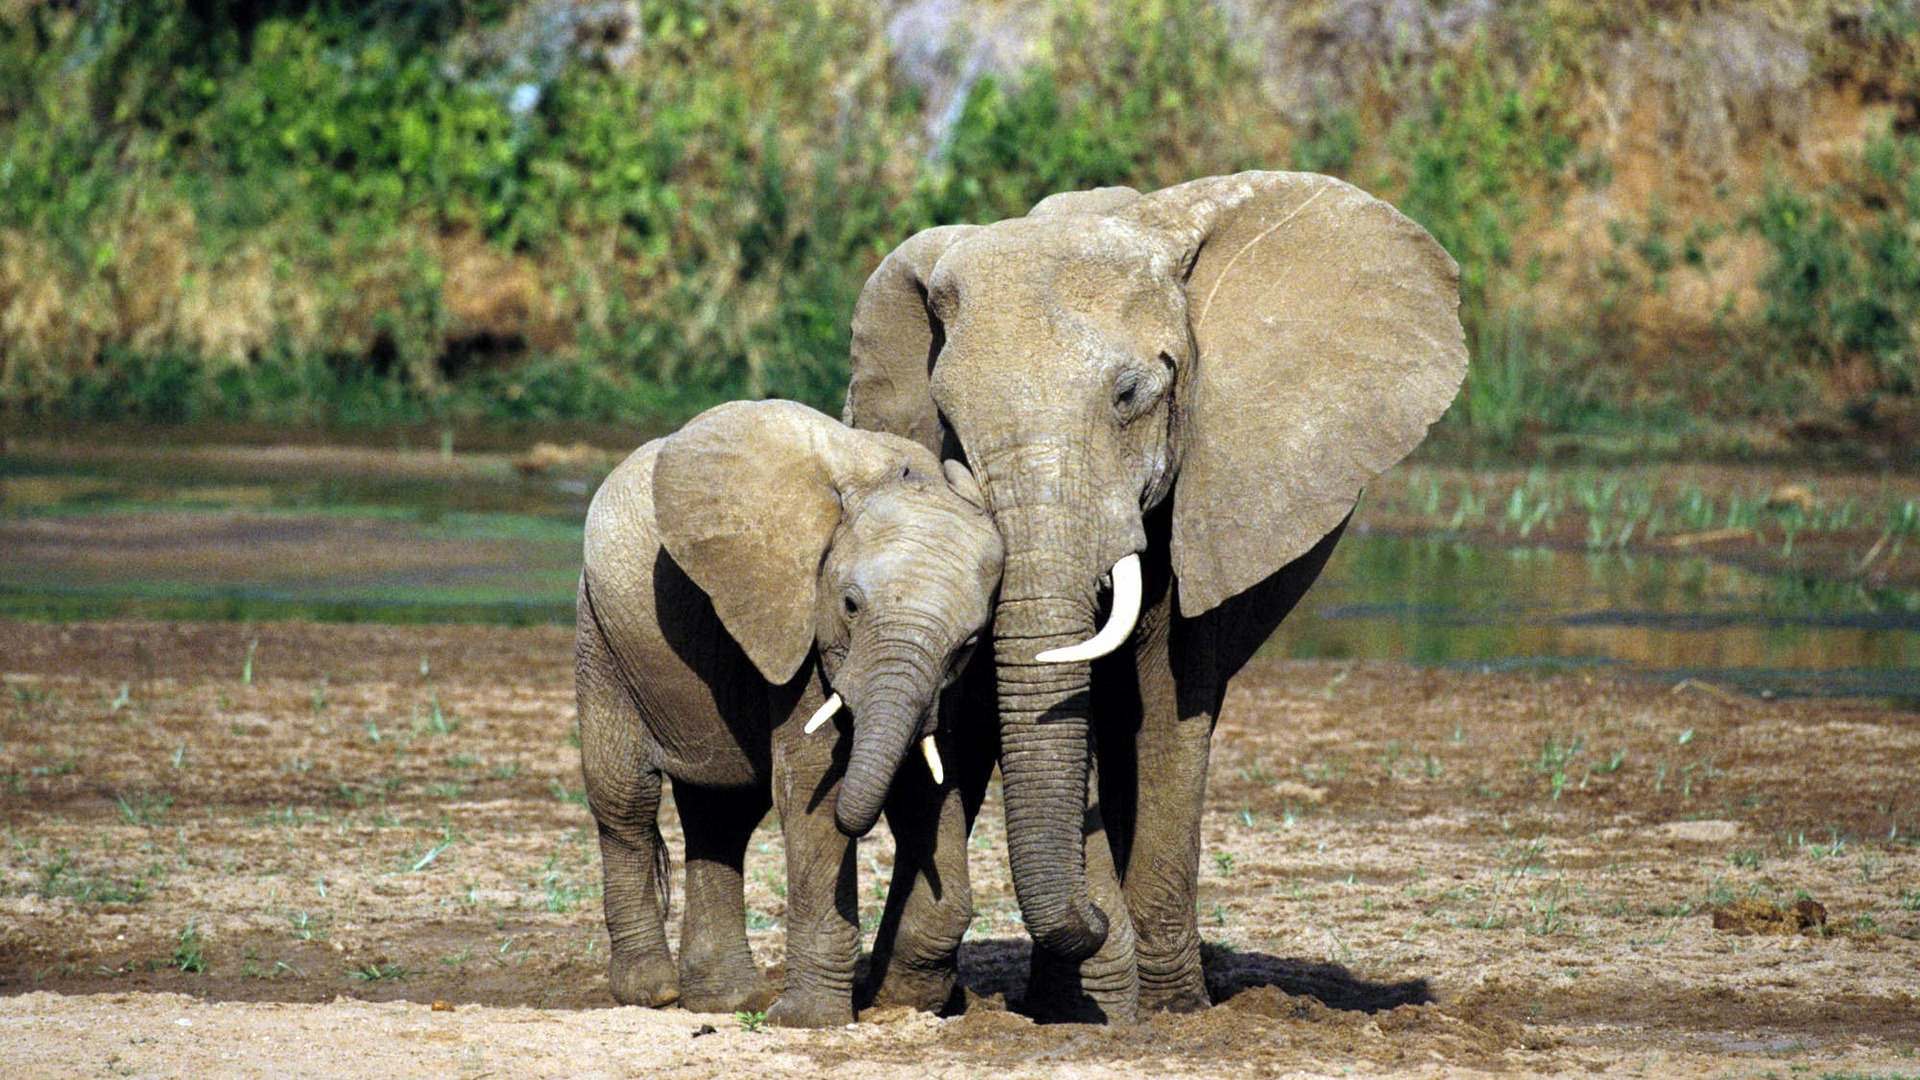 Những hình ảnh cuối cùng về voi nữ hoàng có đôi ngà khổng lồ ở Kenya   VTVVN